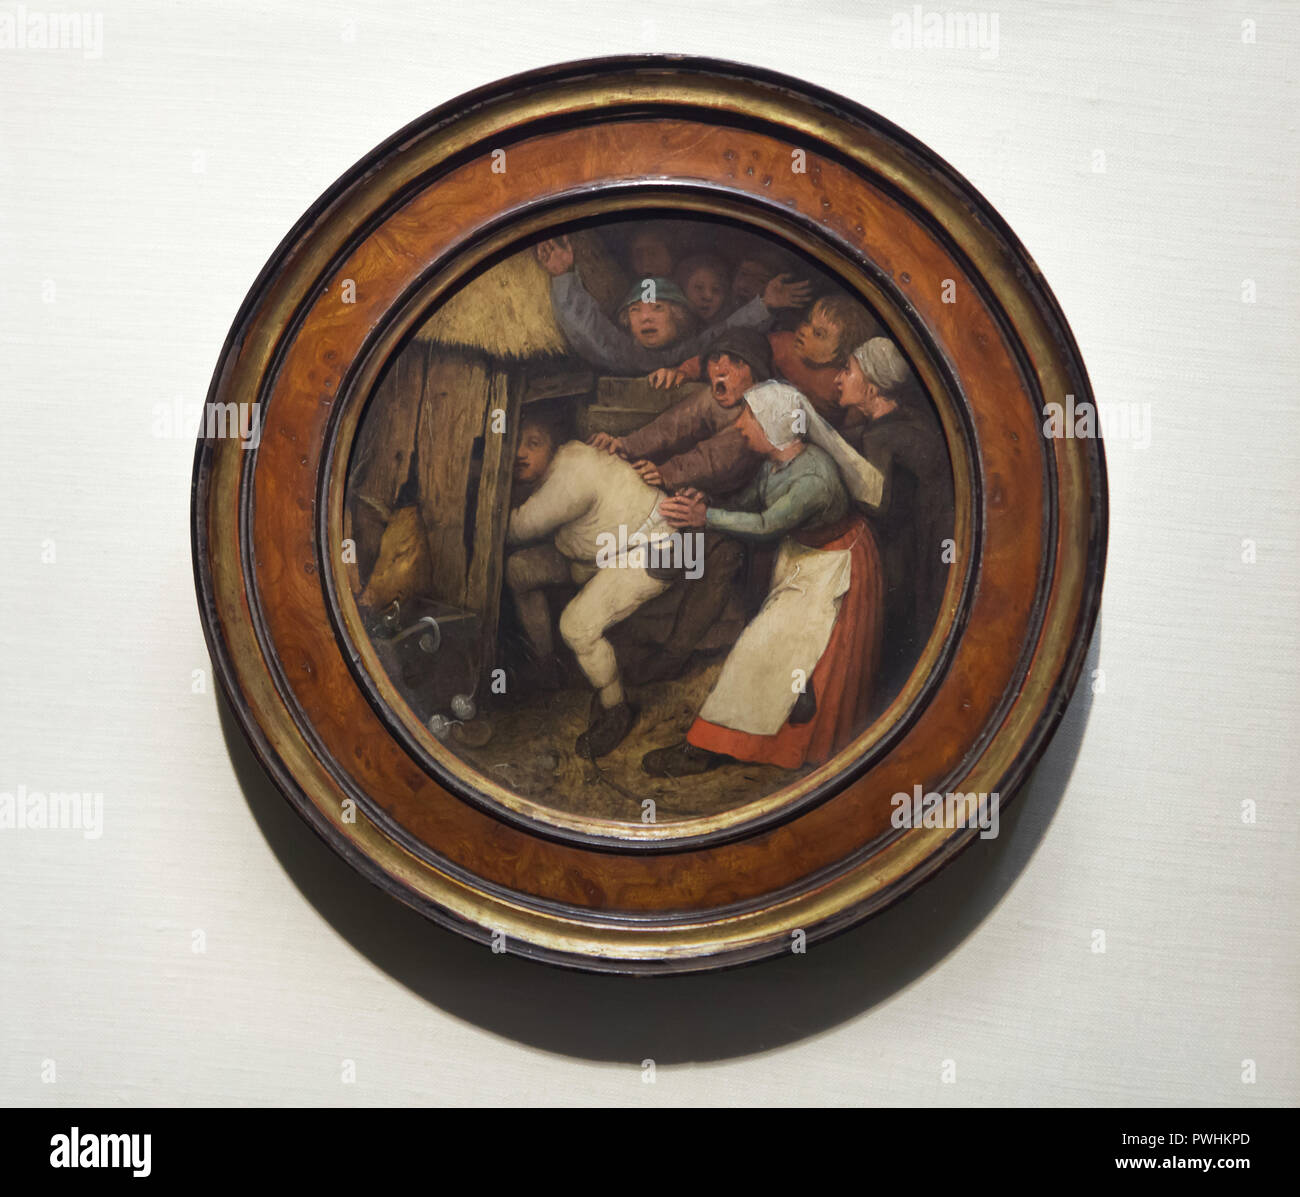 Dipinto 'l'ubriaco gettato nel porcile' olandese da pittore rinascimentale Pieter Bruegel il Vecchio (1557) sul display alla sua mostra retrospettiva del Kunsthistorisches Museum (Museo di Storia dell'arte) di Vienna in Austria. La mostra la marcatura del 450° anniversario della morte di Pieter Bruegel il Vecchio corre fino al 13 gennaio 2019. Foto Stock